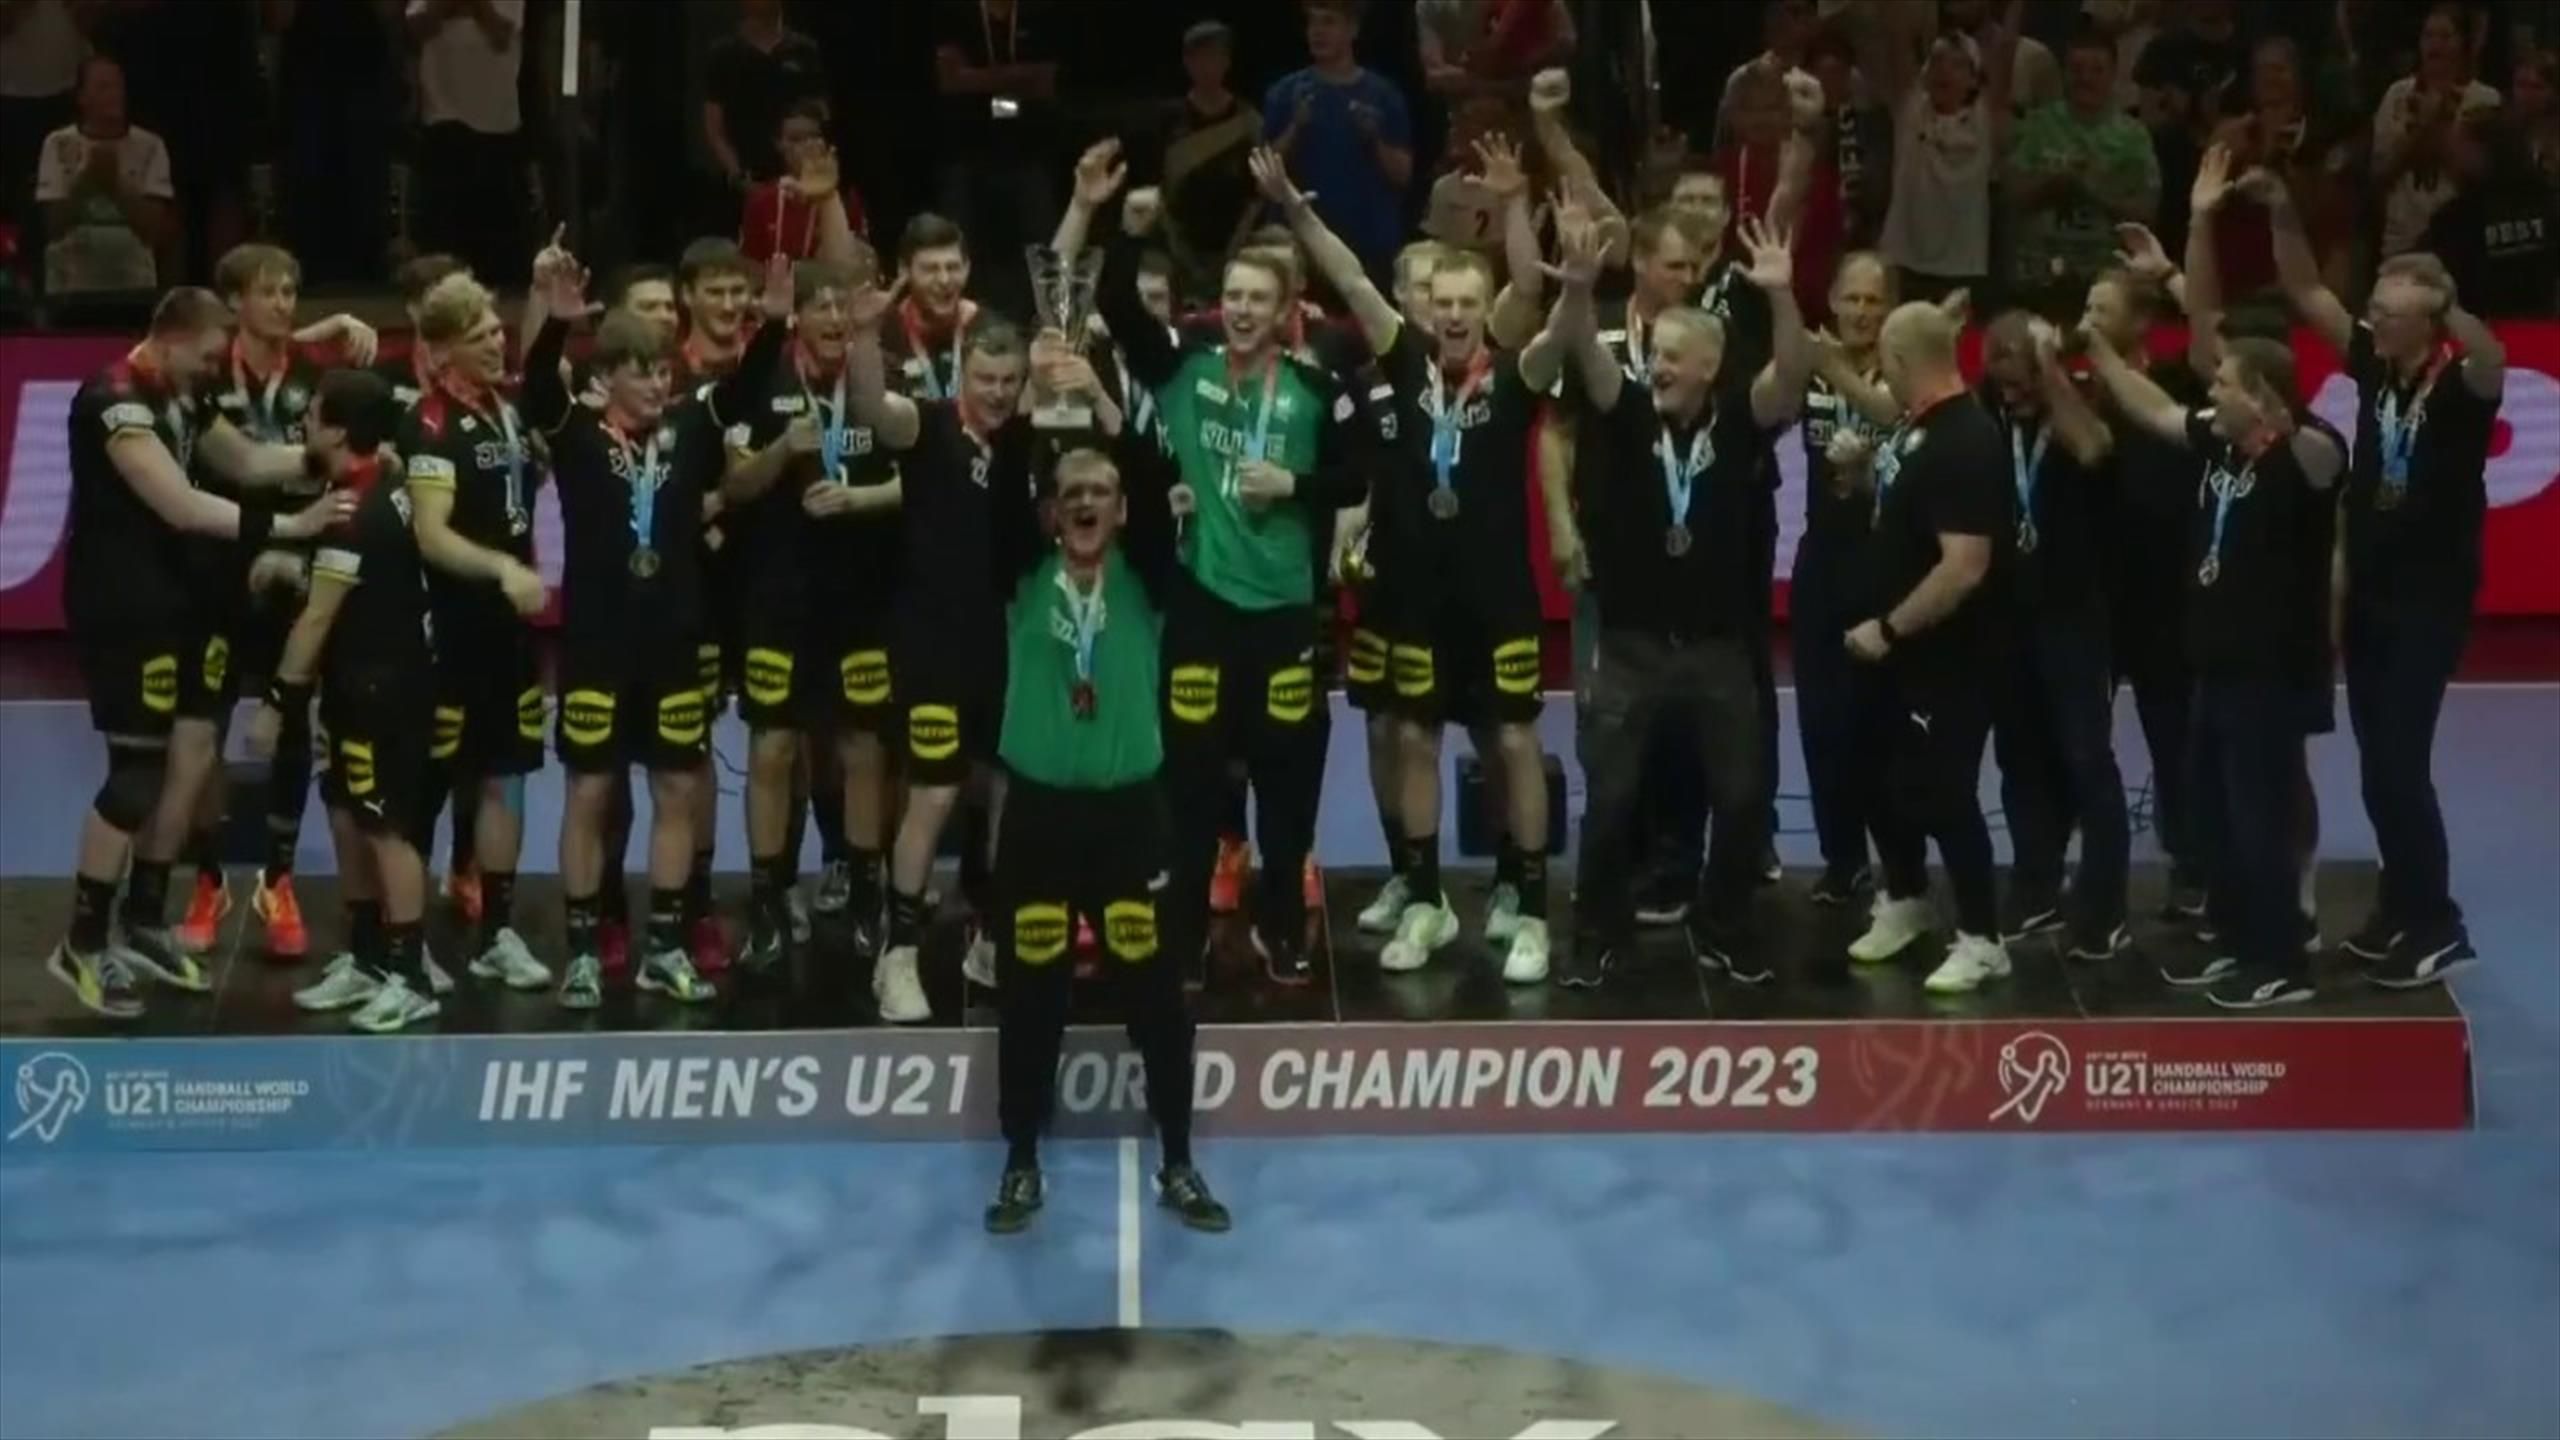 U21-WM Deutschland stemmt Pokal in die Höhe - DHB-Handballer krönen sich in Berlin zum Weltmeister - Handball Video